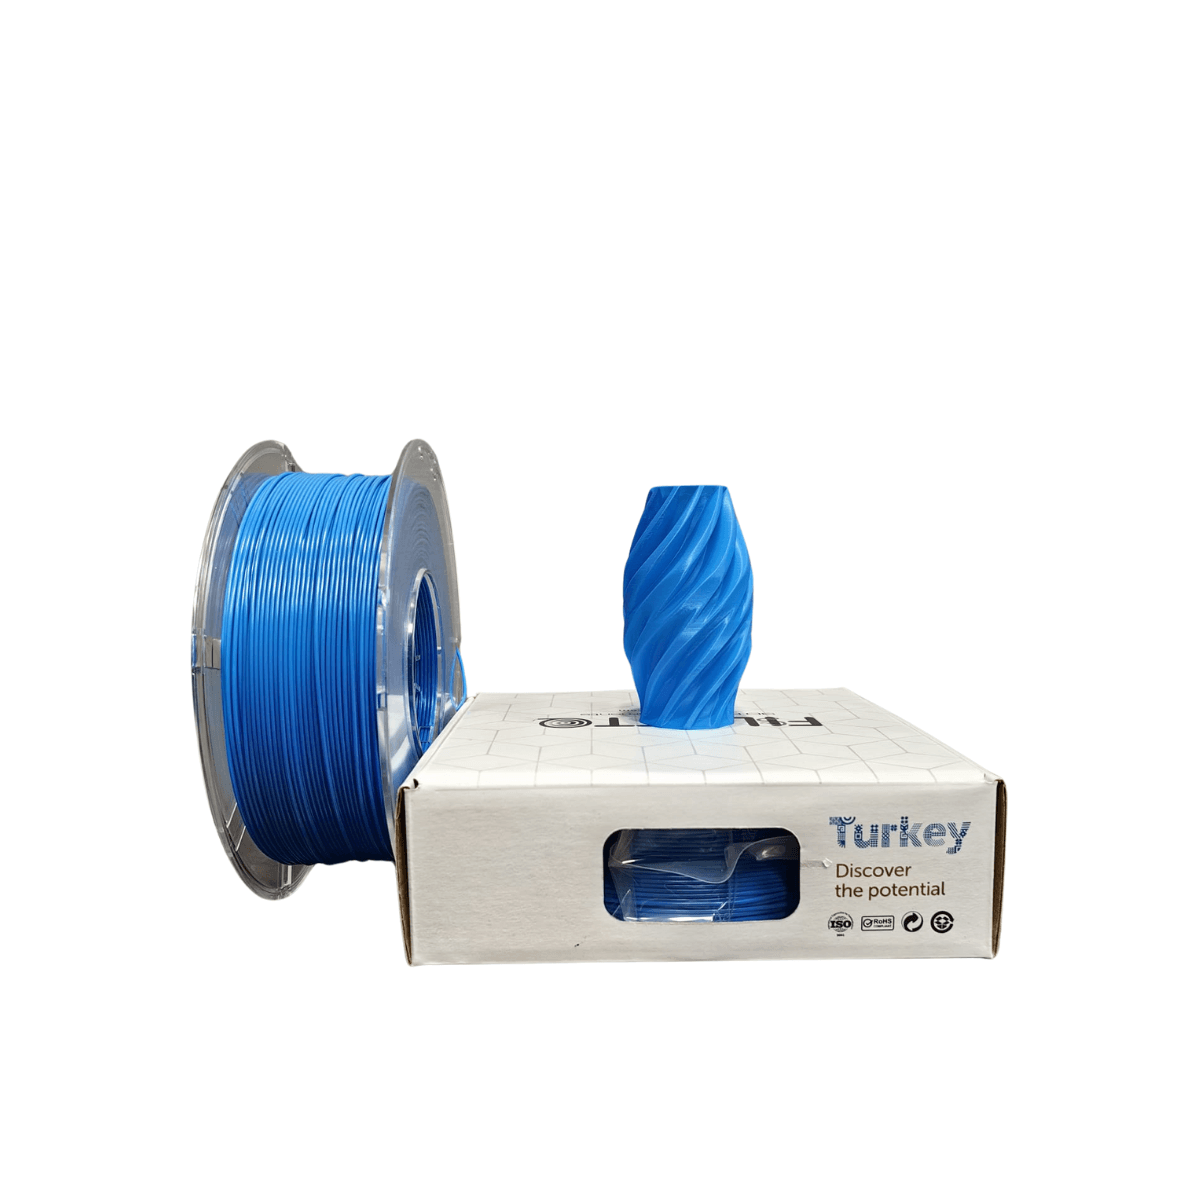 Filetto PETG Filament 1.75mm 1 KG - Blue